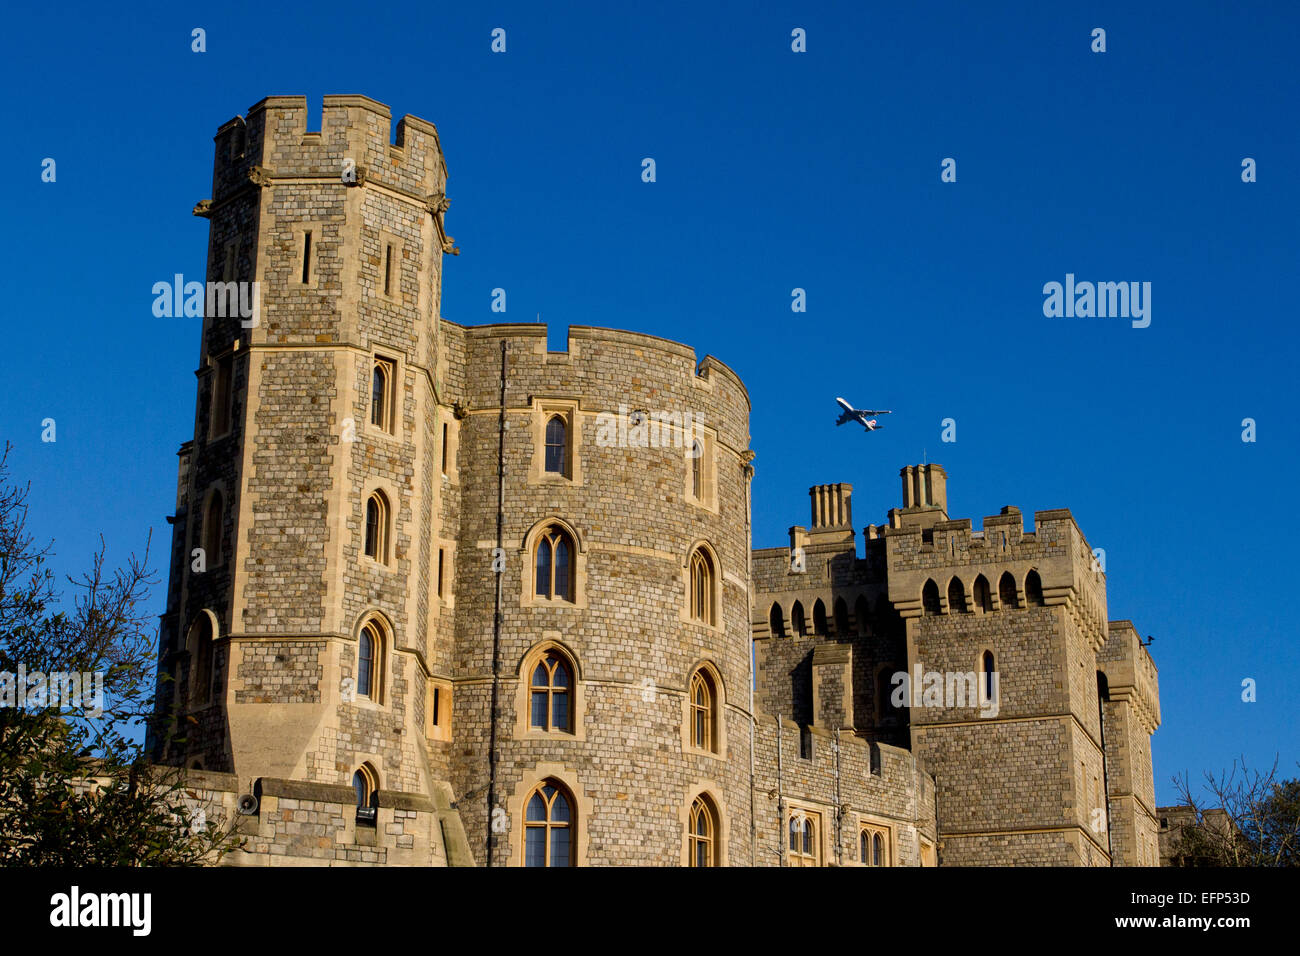 Le roi Édouard III Tower au château de Windsor, Berkshire, Angleterre avec volant au-dessus de l'avion en Janvier Banque D'Images